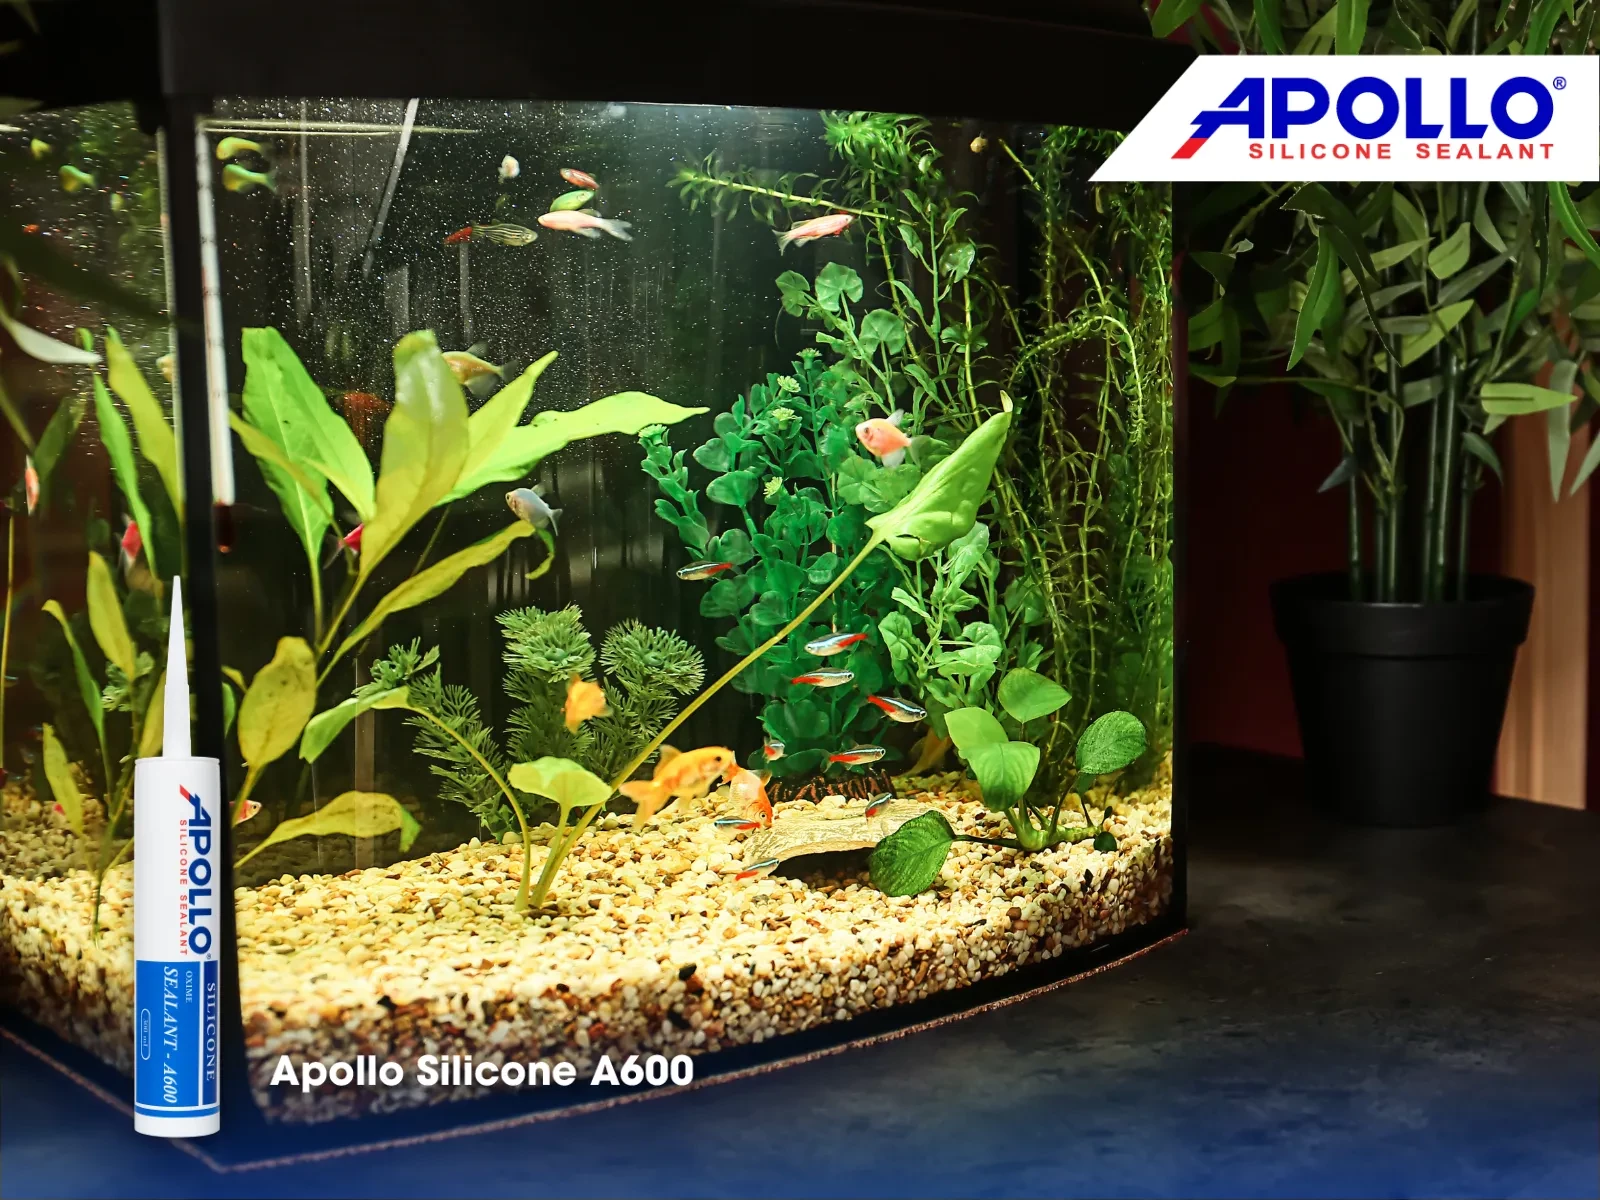 Apollo Silicone A600 phù hợp với những hồ cá yêu cầu tính thẩm cao